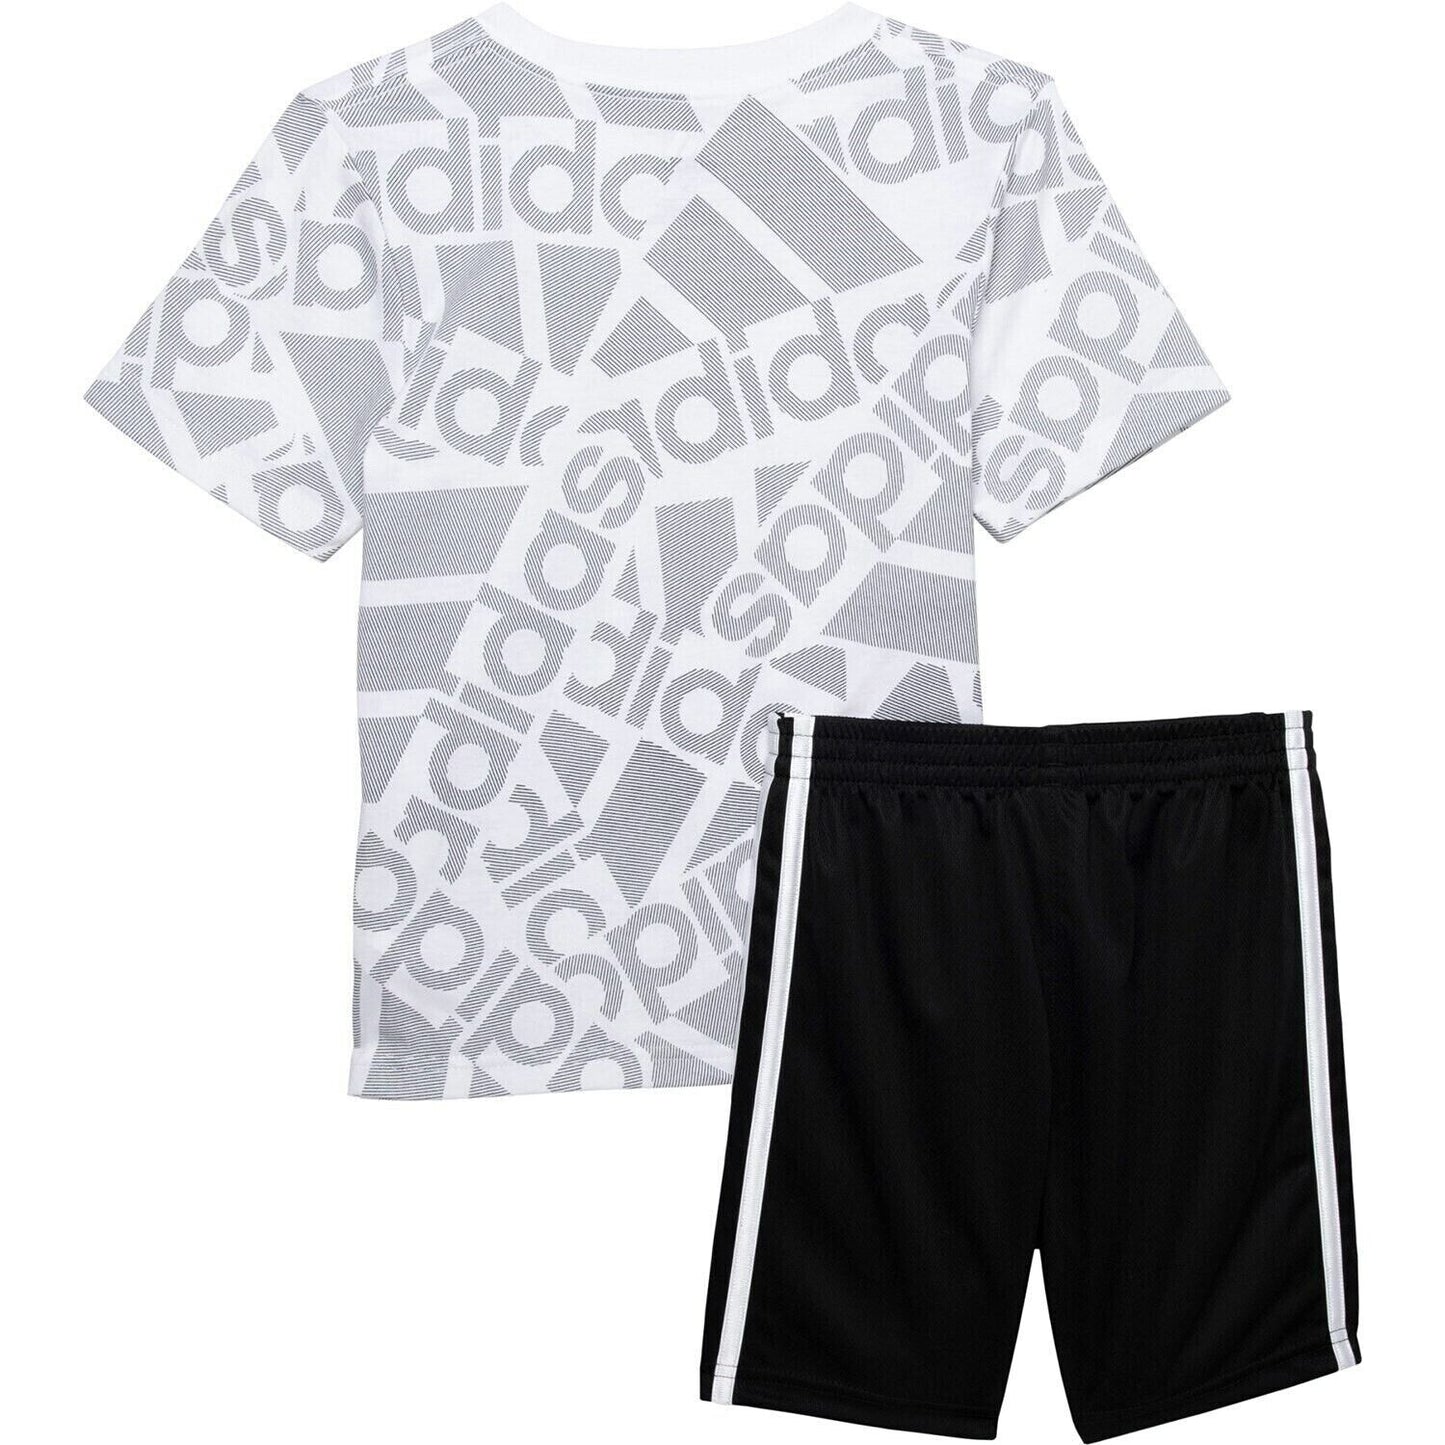 Adidas Big Boy's Logo Graphic Print Active T-Shirt and Shorts Set